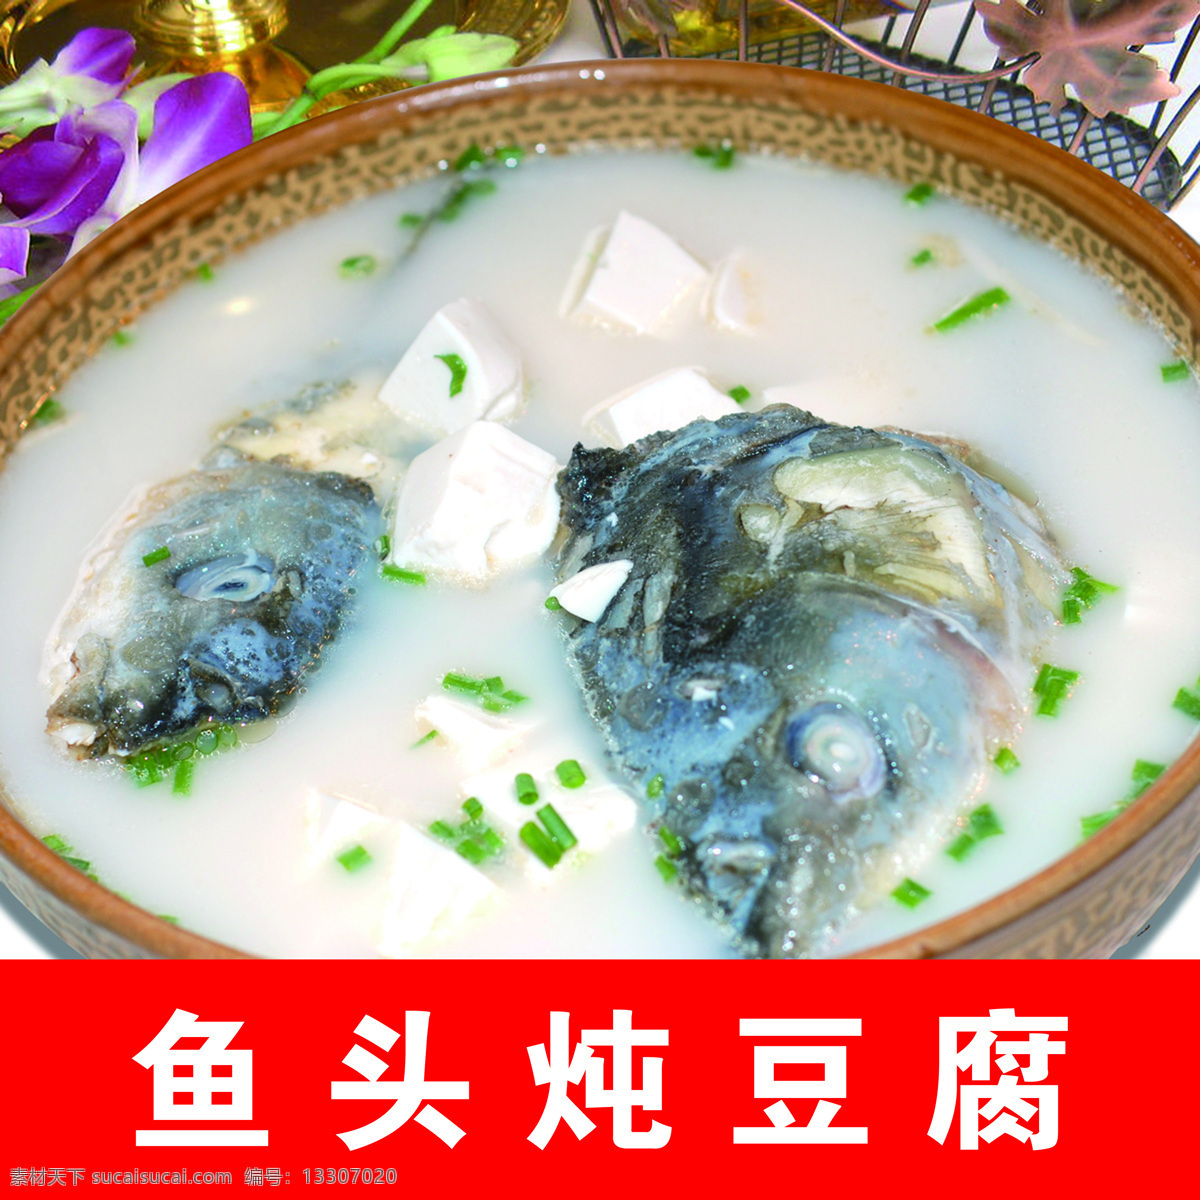 鱼头炖豆腐 鱼汤 鲢鱼头 豆腐 菜品 餐饮美食 传统美食